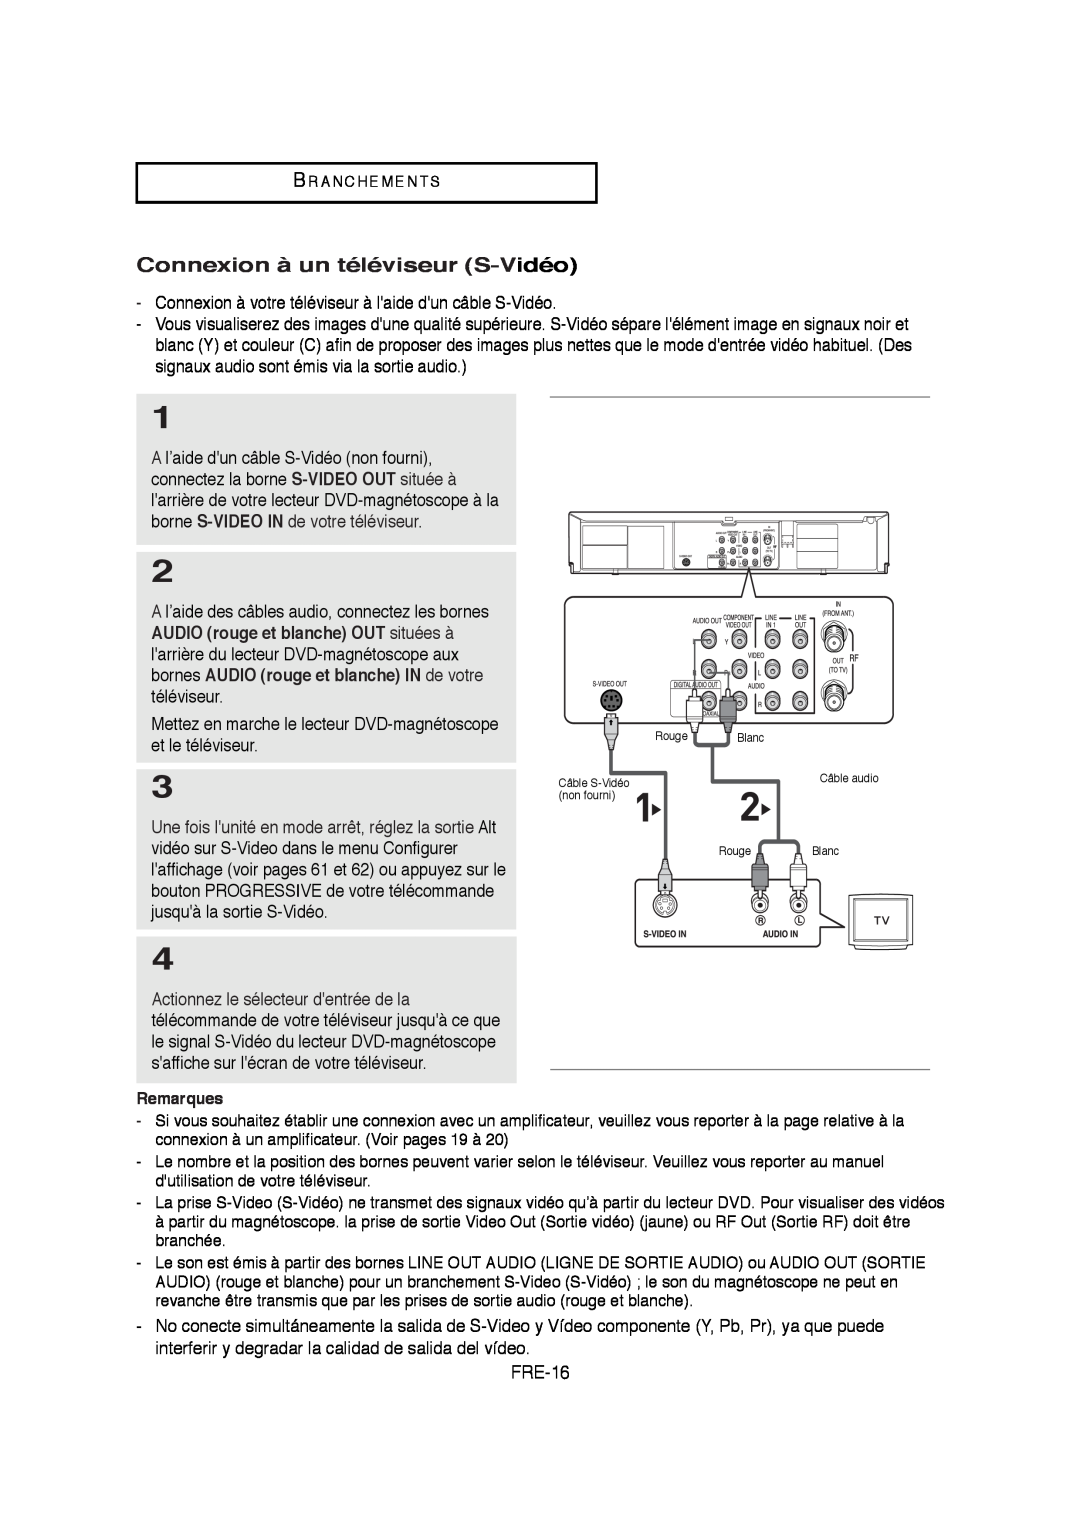 Samsung V6700-XAC, AK68-01304A, 20070205090323359 instruction manual Connexion à un téléviseur S-Vidéo, FRE-16 